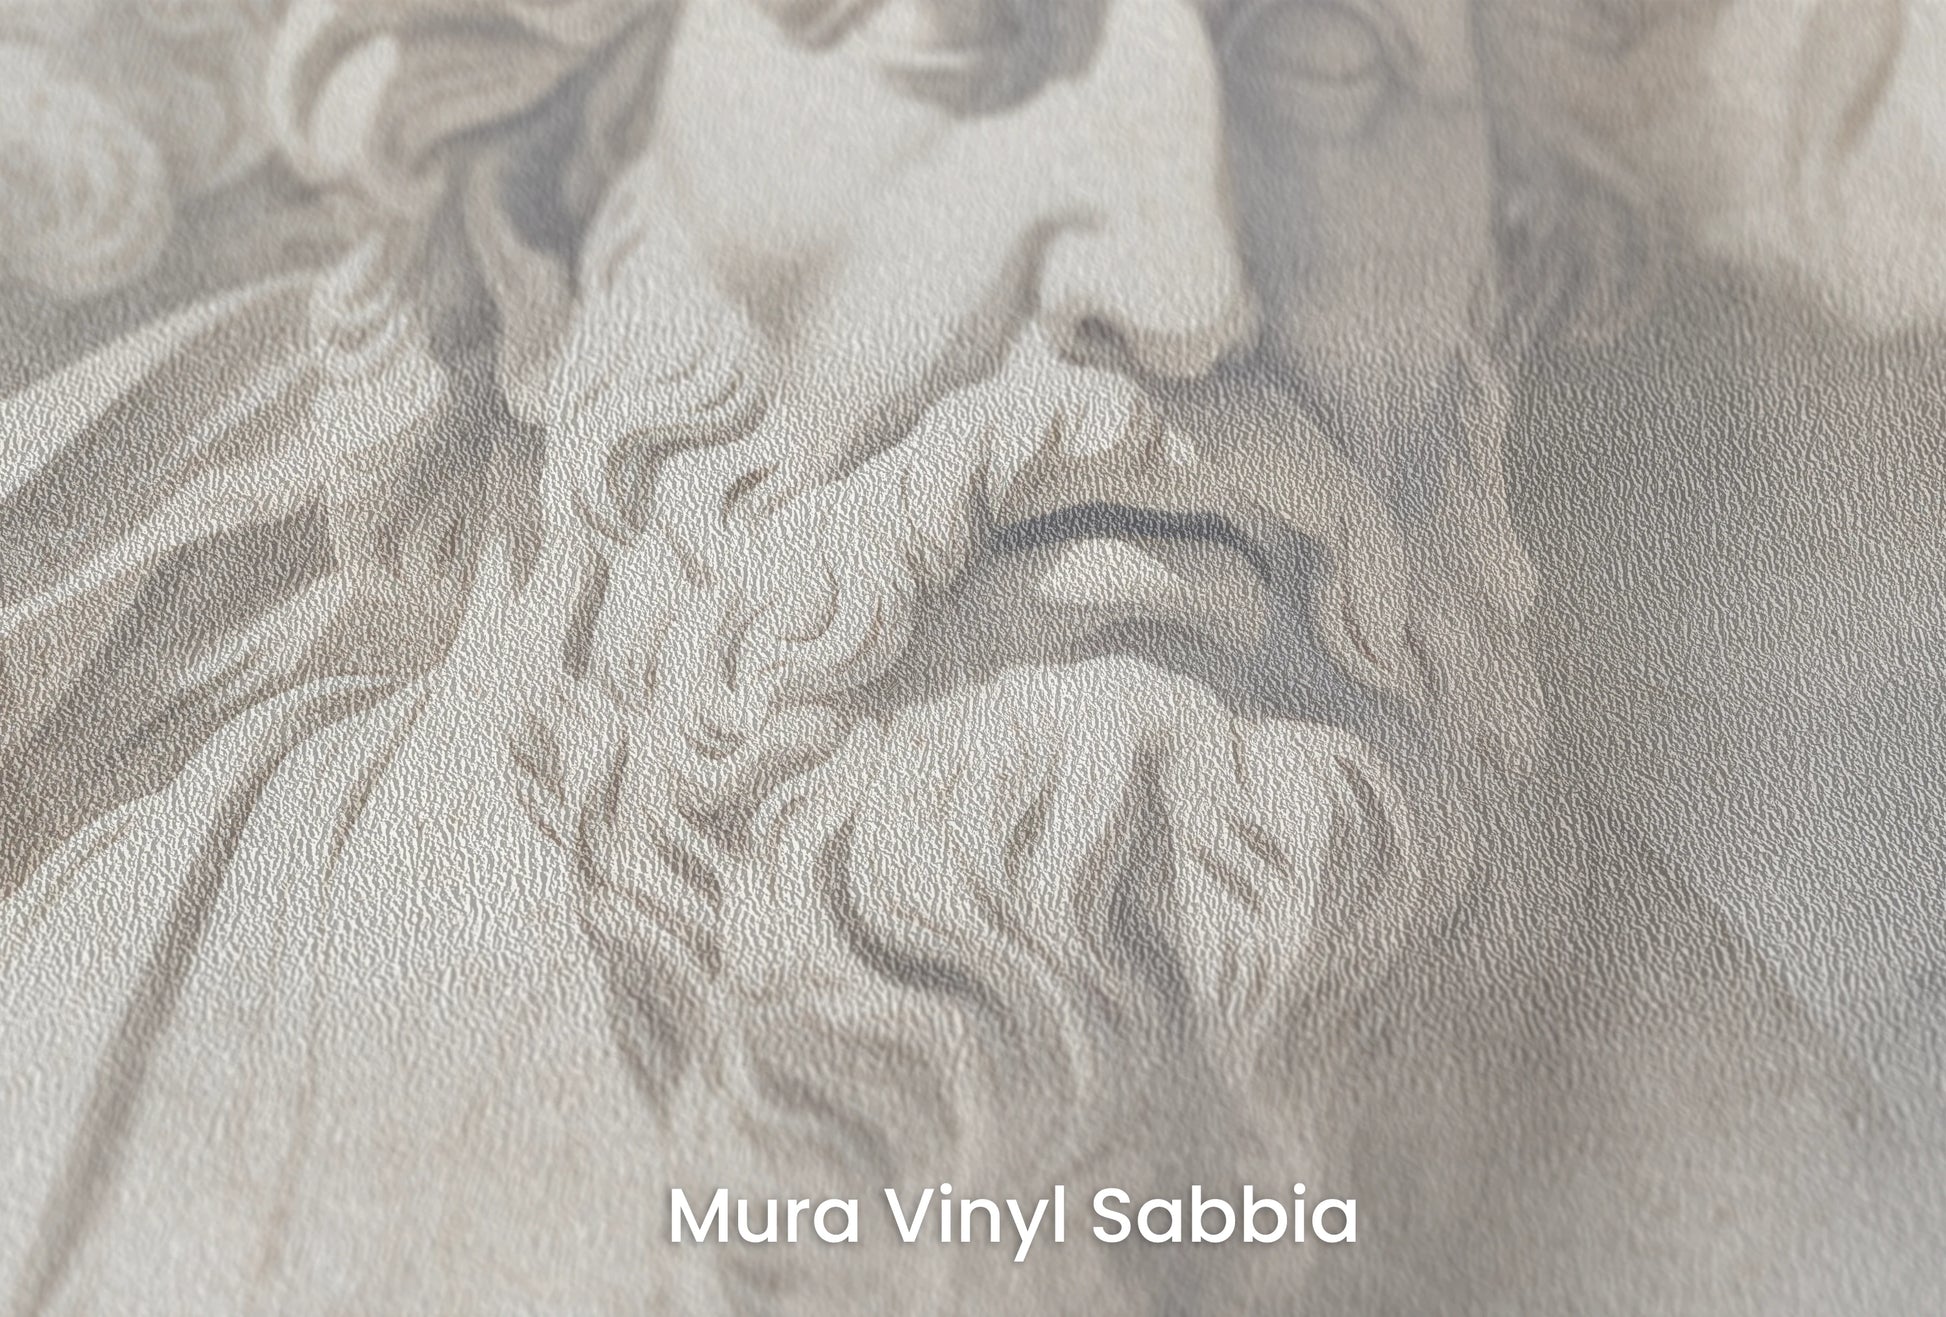 Zbliżenie na artystyczną fototapetę o nazwie Meditation of Heraclitus na podłożu Mura Vinyl Sabbia struktura grubego ziarna piasku.